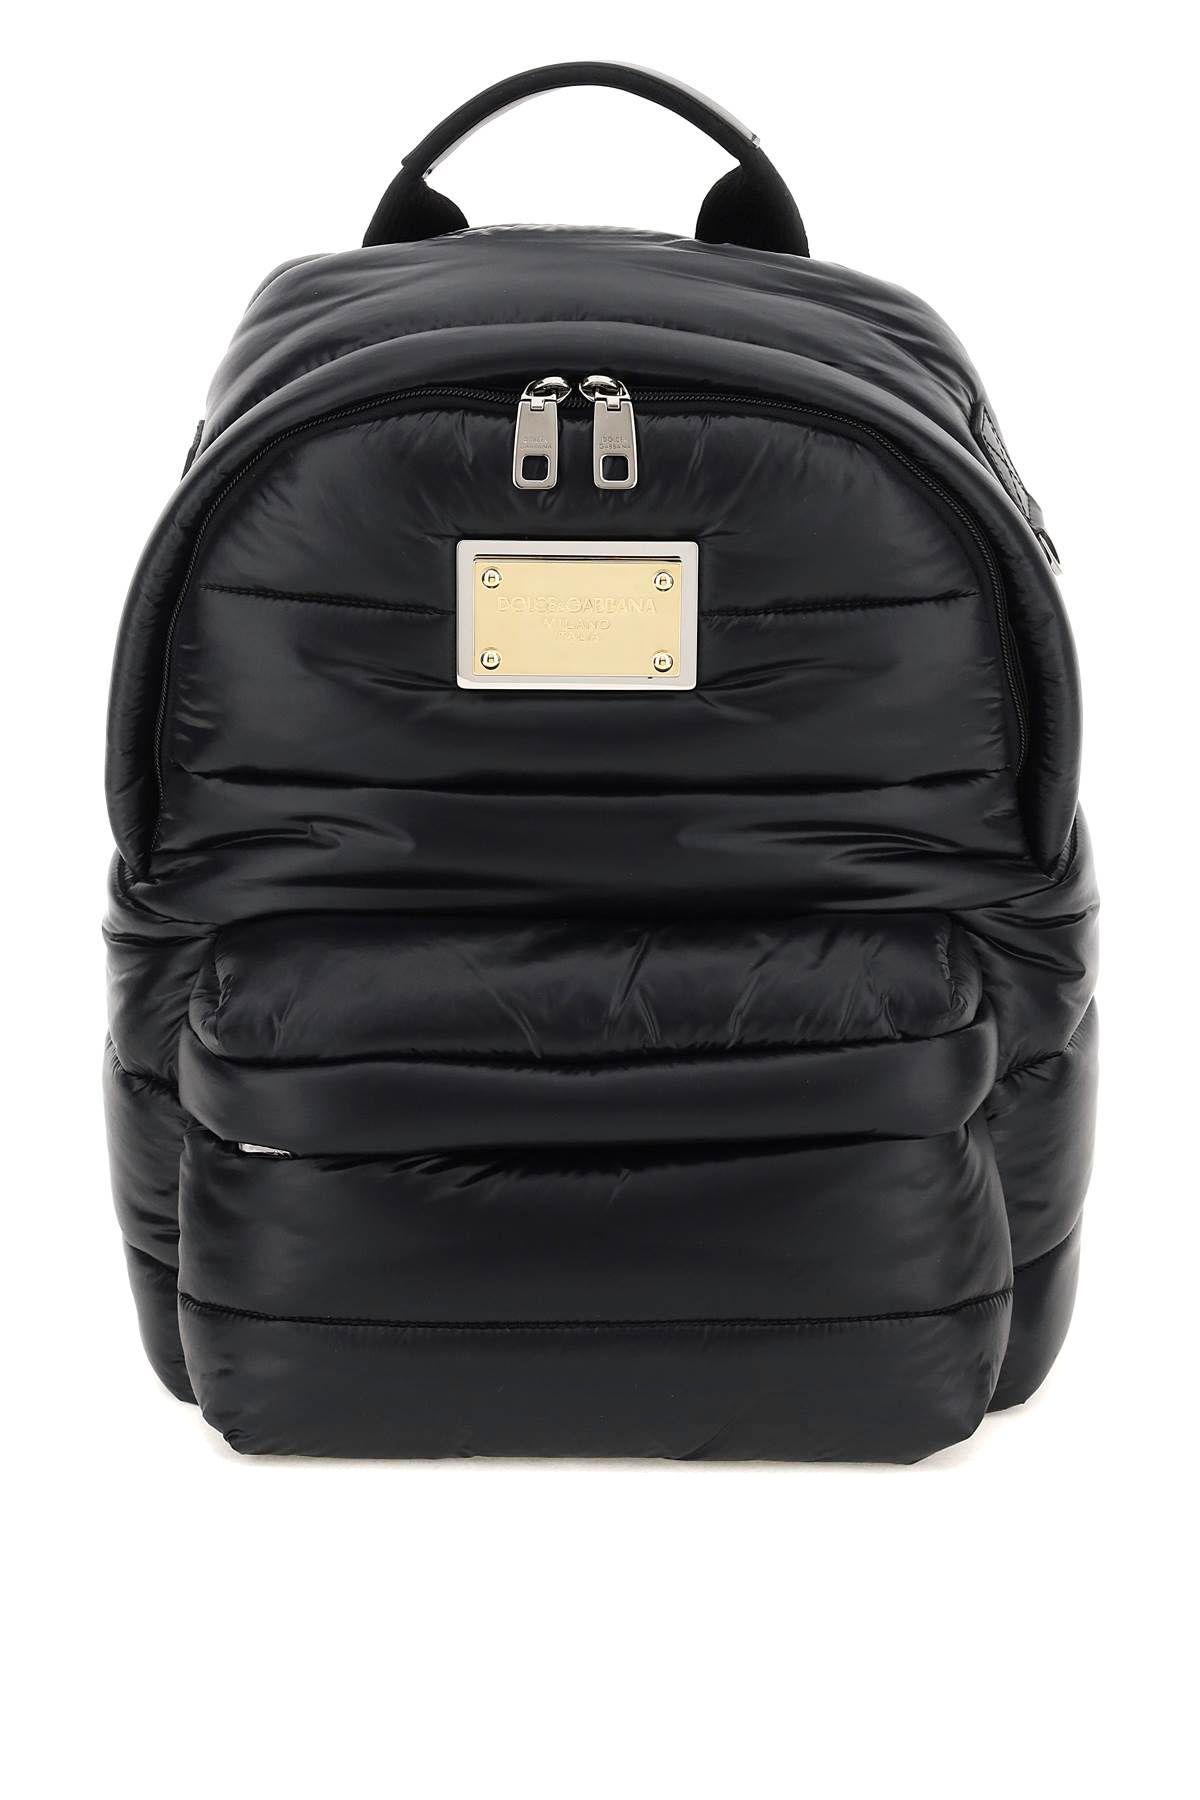 Dolce & Gabbana Padded Nylon Backpack